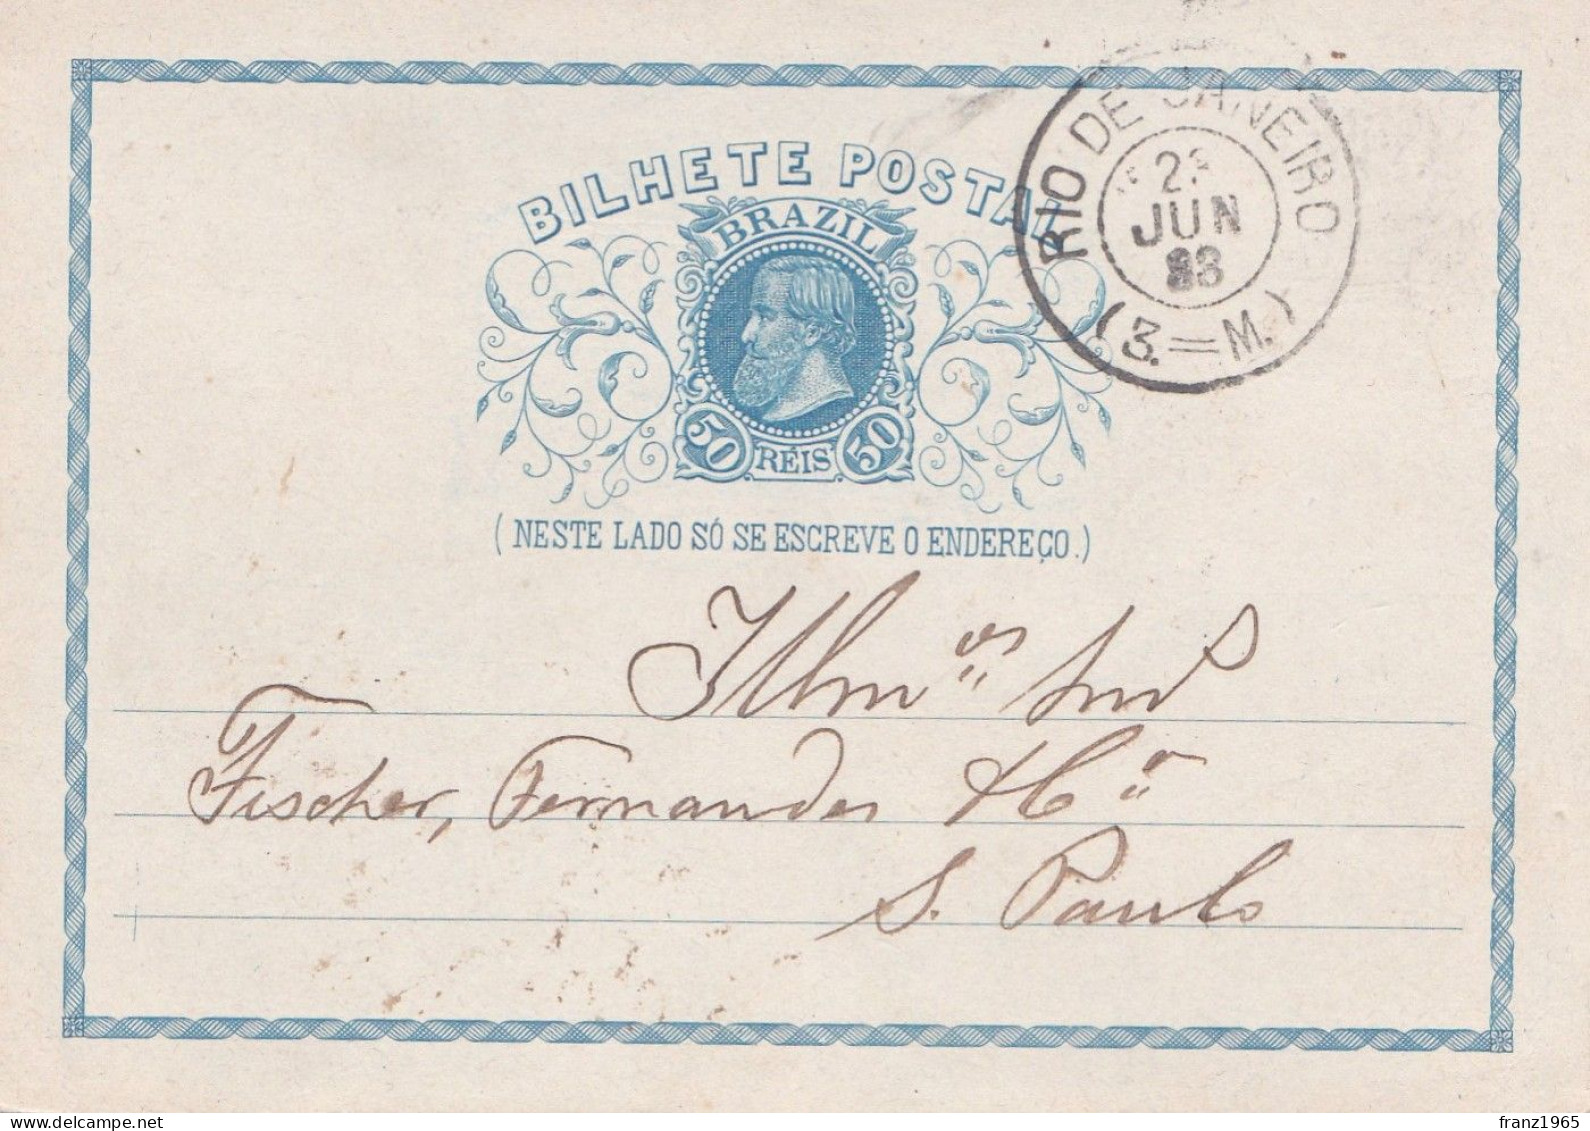 Bilhete Postal - Rio De Janeiro - 1883 - Covers & Documents